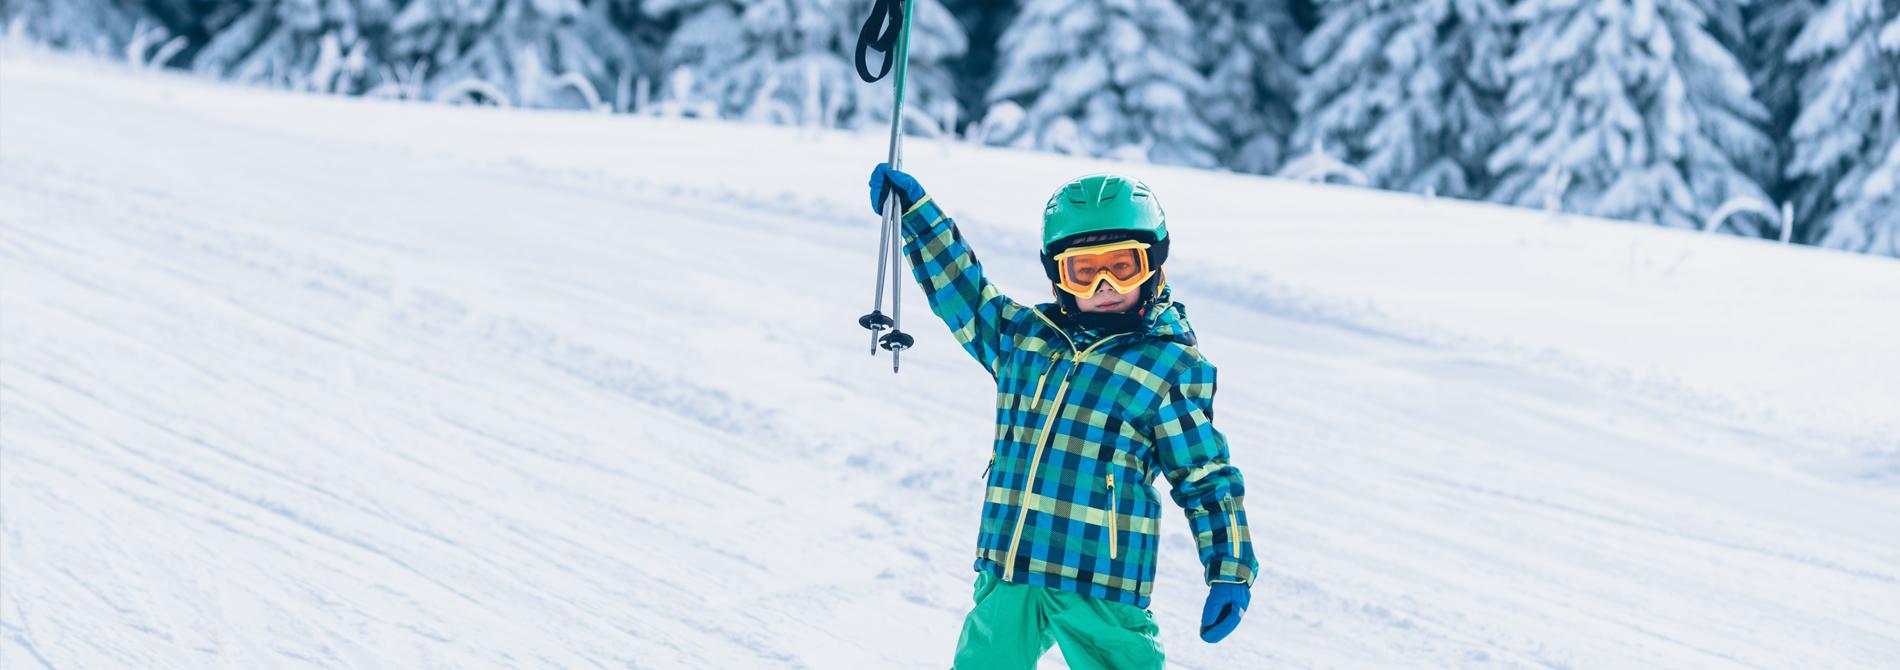 Barn på ski med stavene i været